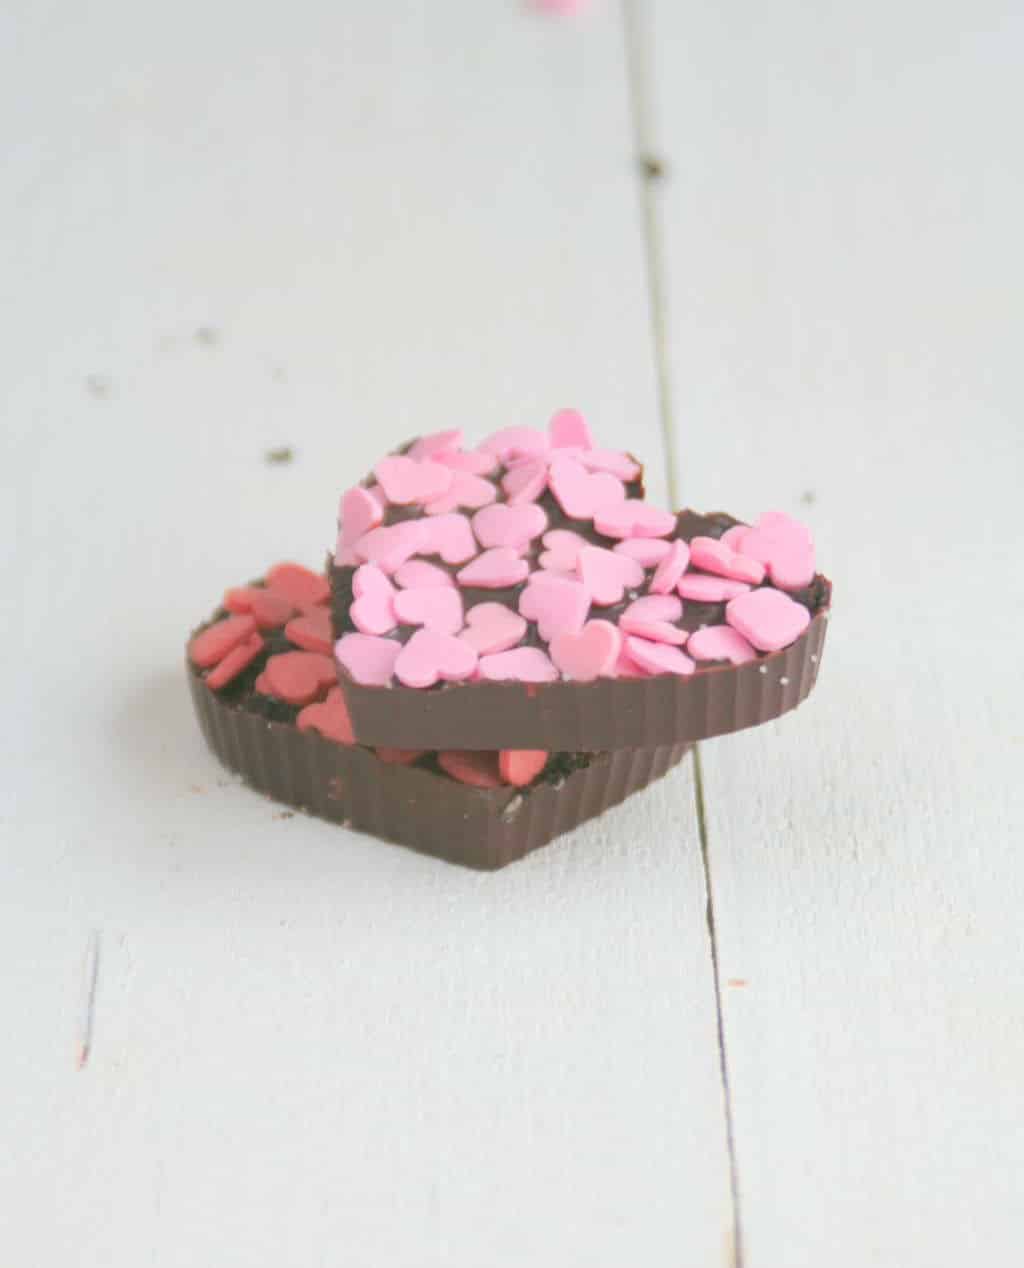 Oreo chocolade hartjes voor wat extra romantiek met Valentijn. Makkelijk en snel gemaakt met slechts 3 ingrediënten. Zien ze er niet schattig uit? #valentijn